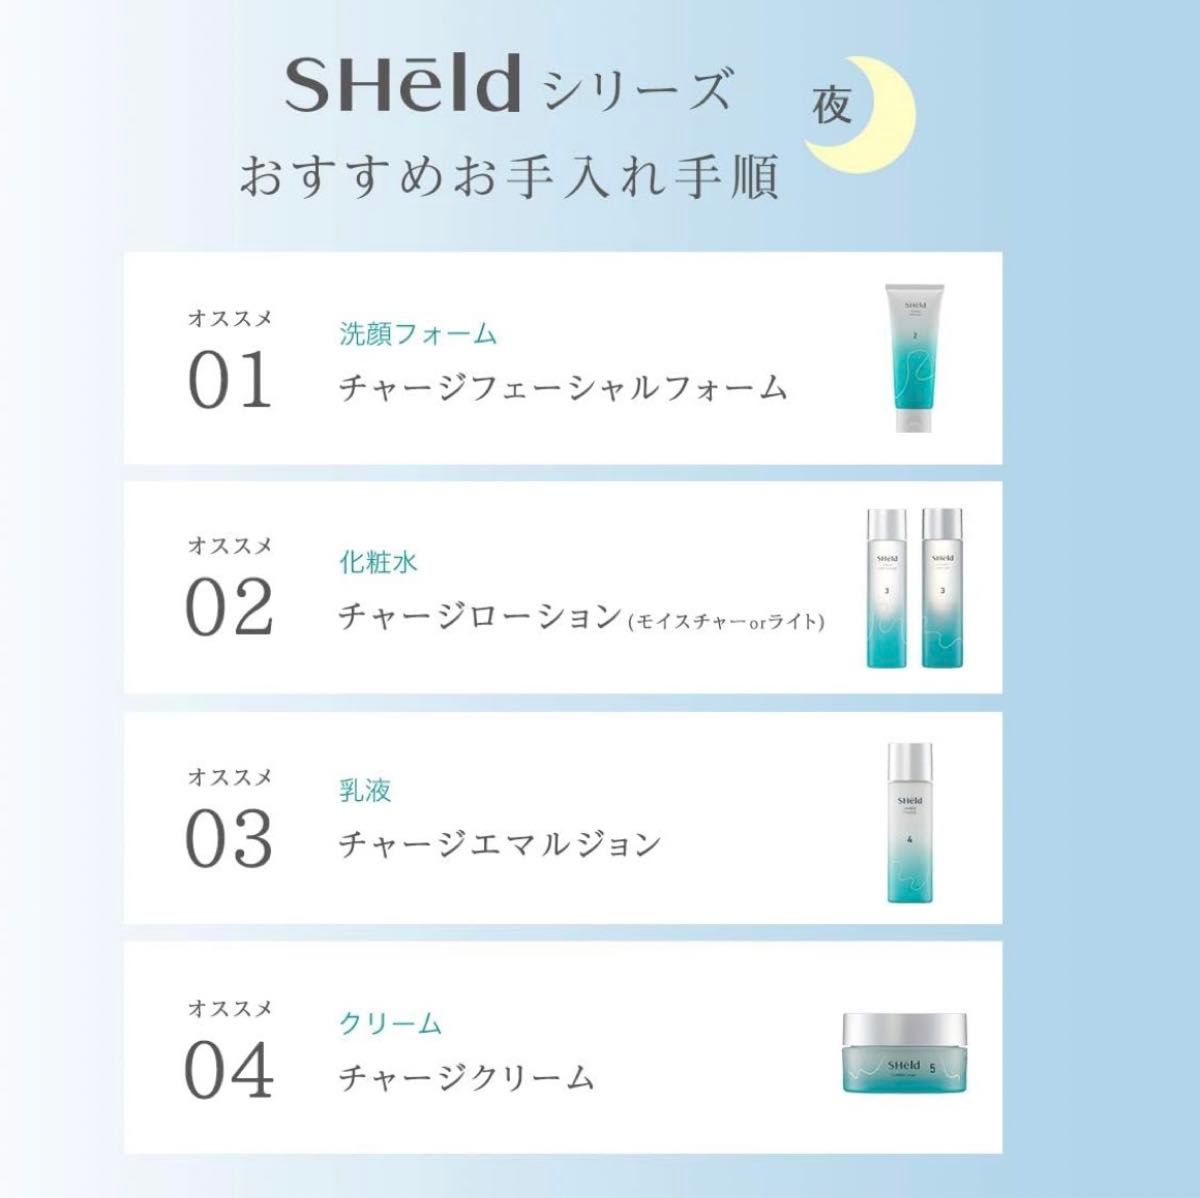 SHeld 夜用 チャージローションライト 化粧水 150mL